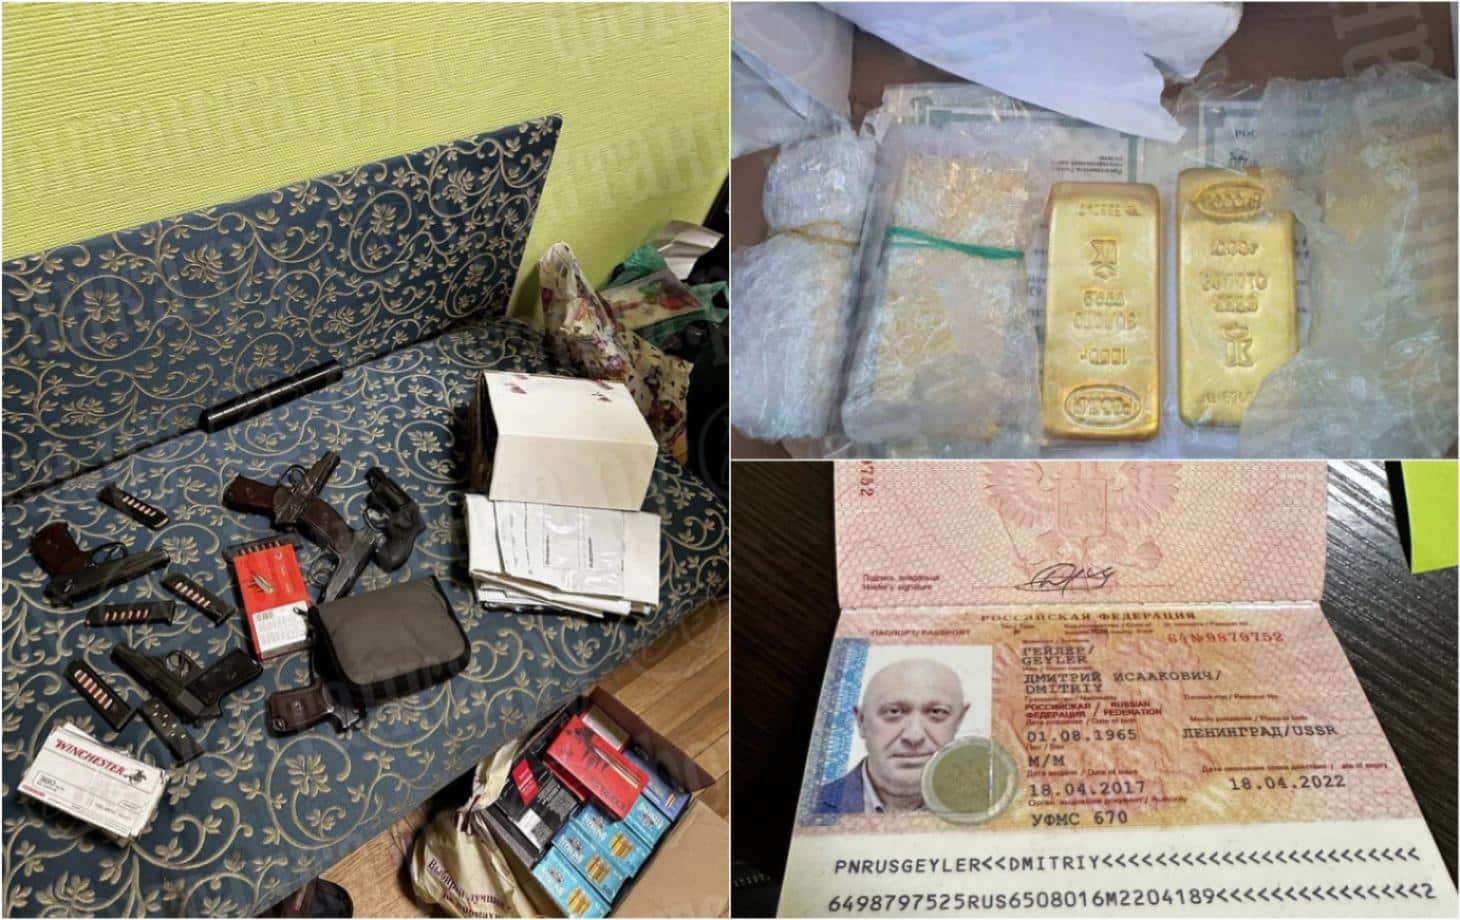 В офисе и машинах Пригожина прошли обыски: найдены слитки золота, деньги и фальшивые паспорта